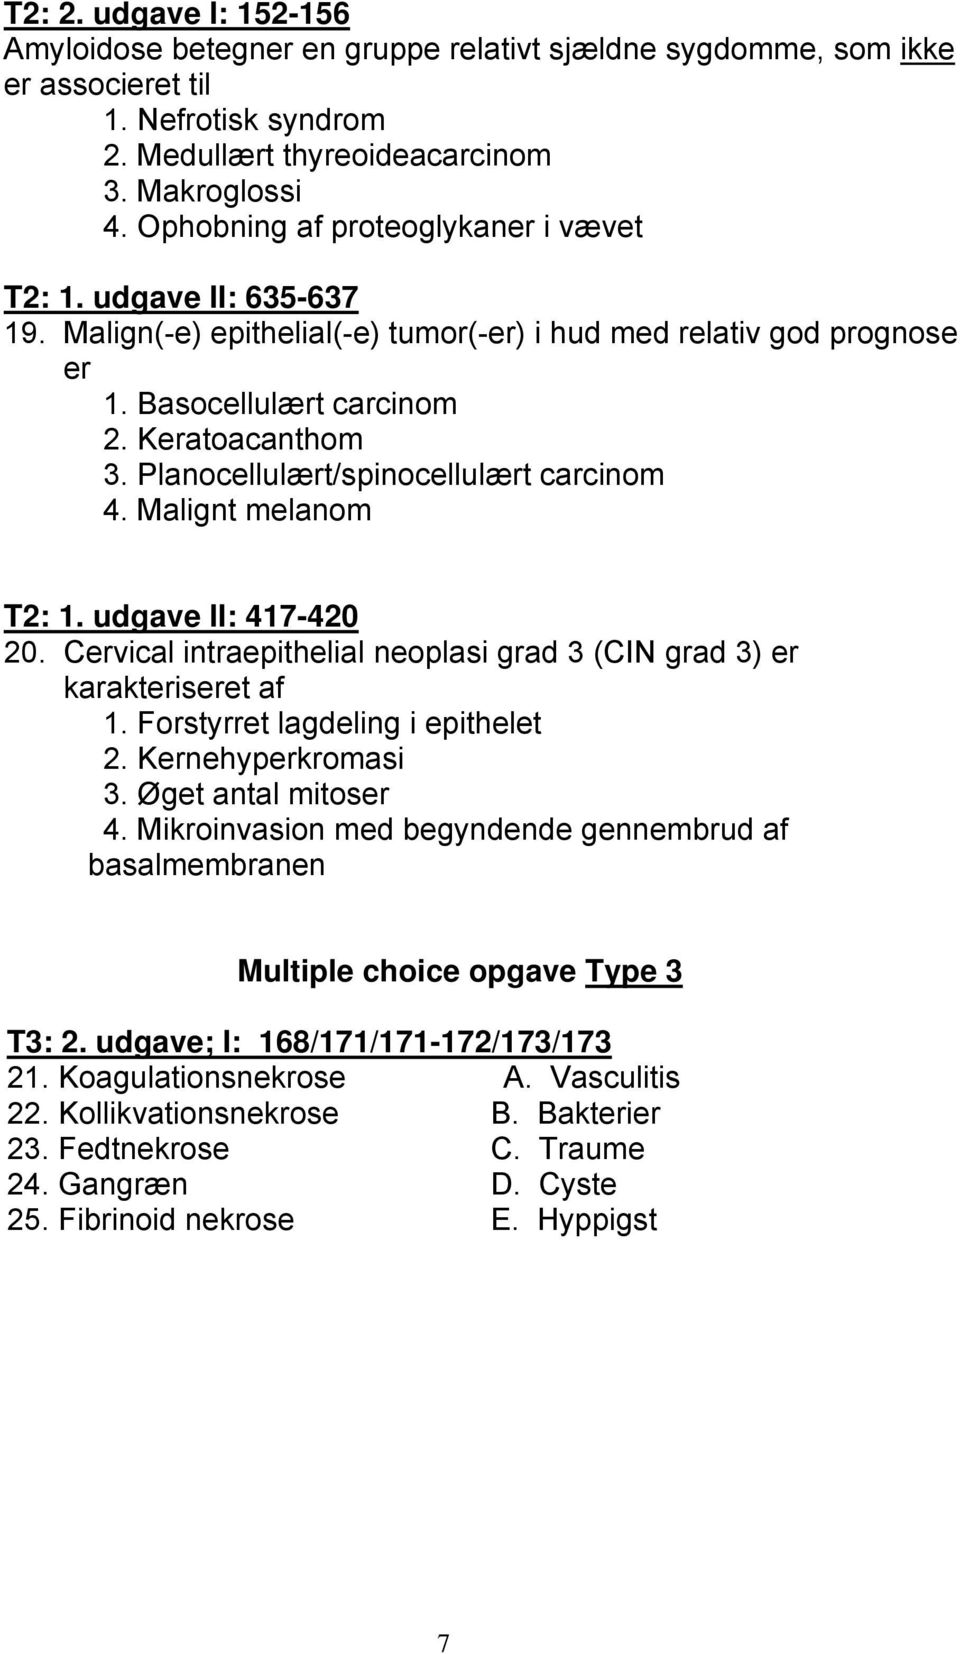 Planocellulært/spinocellulært carcinom 4. Malignt melanom T2: 1. udgave II: 417-420 20. Cervical intraepithelial neoplasi grad 3 (CIN grad 3) er karakteriseret af 1.